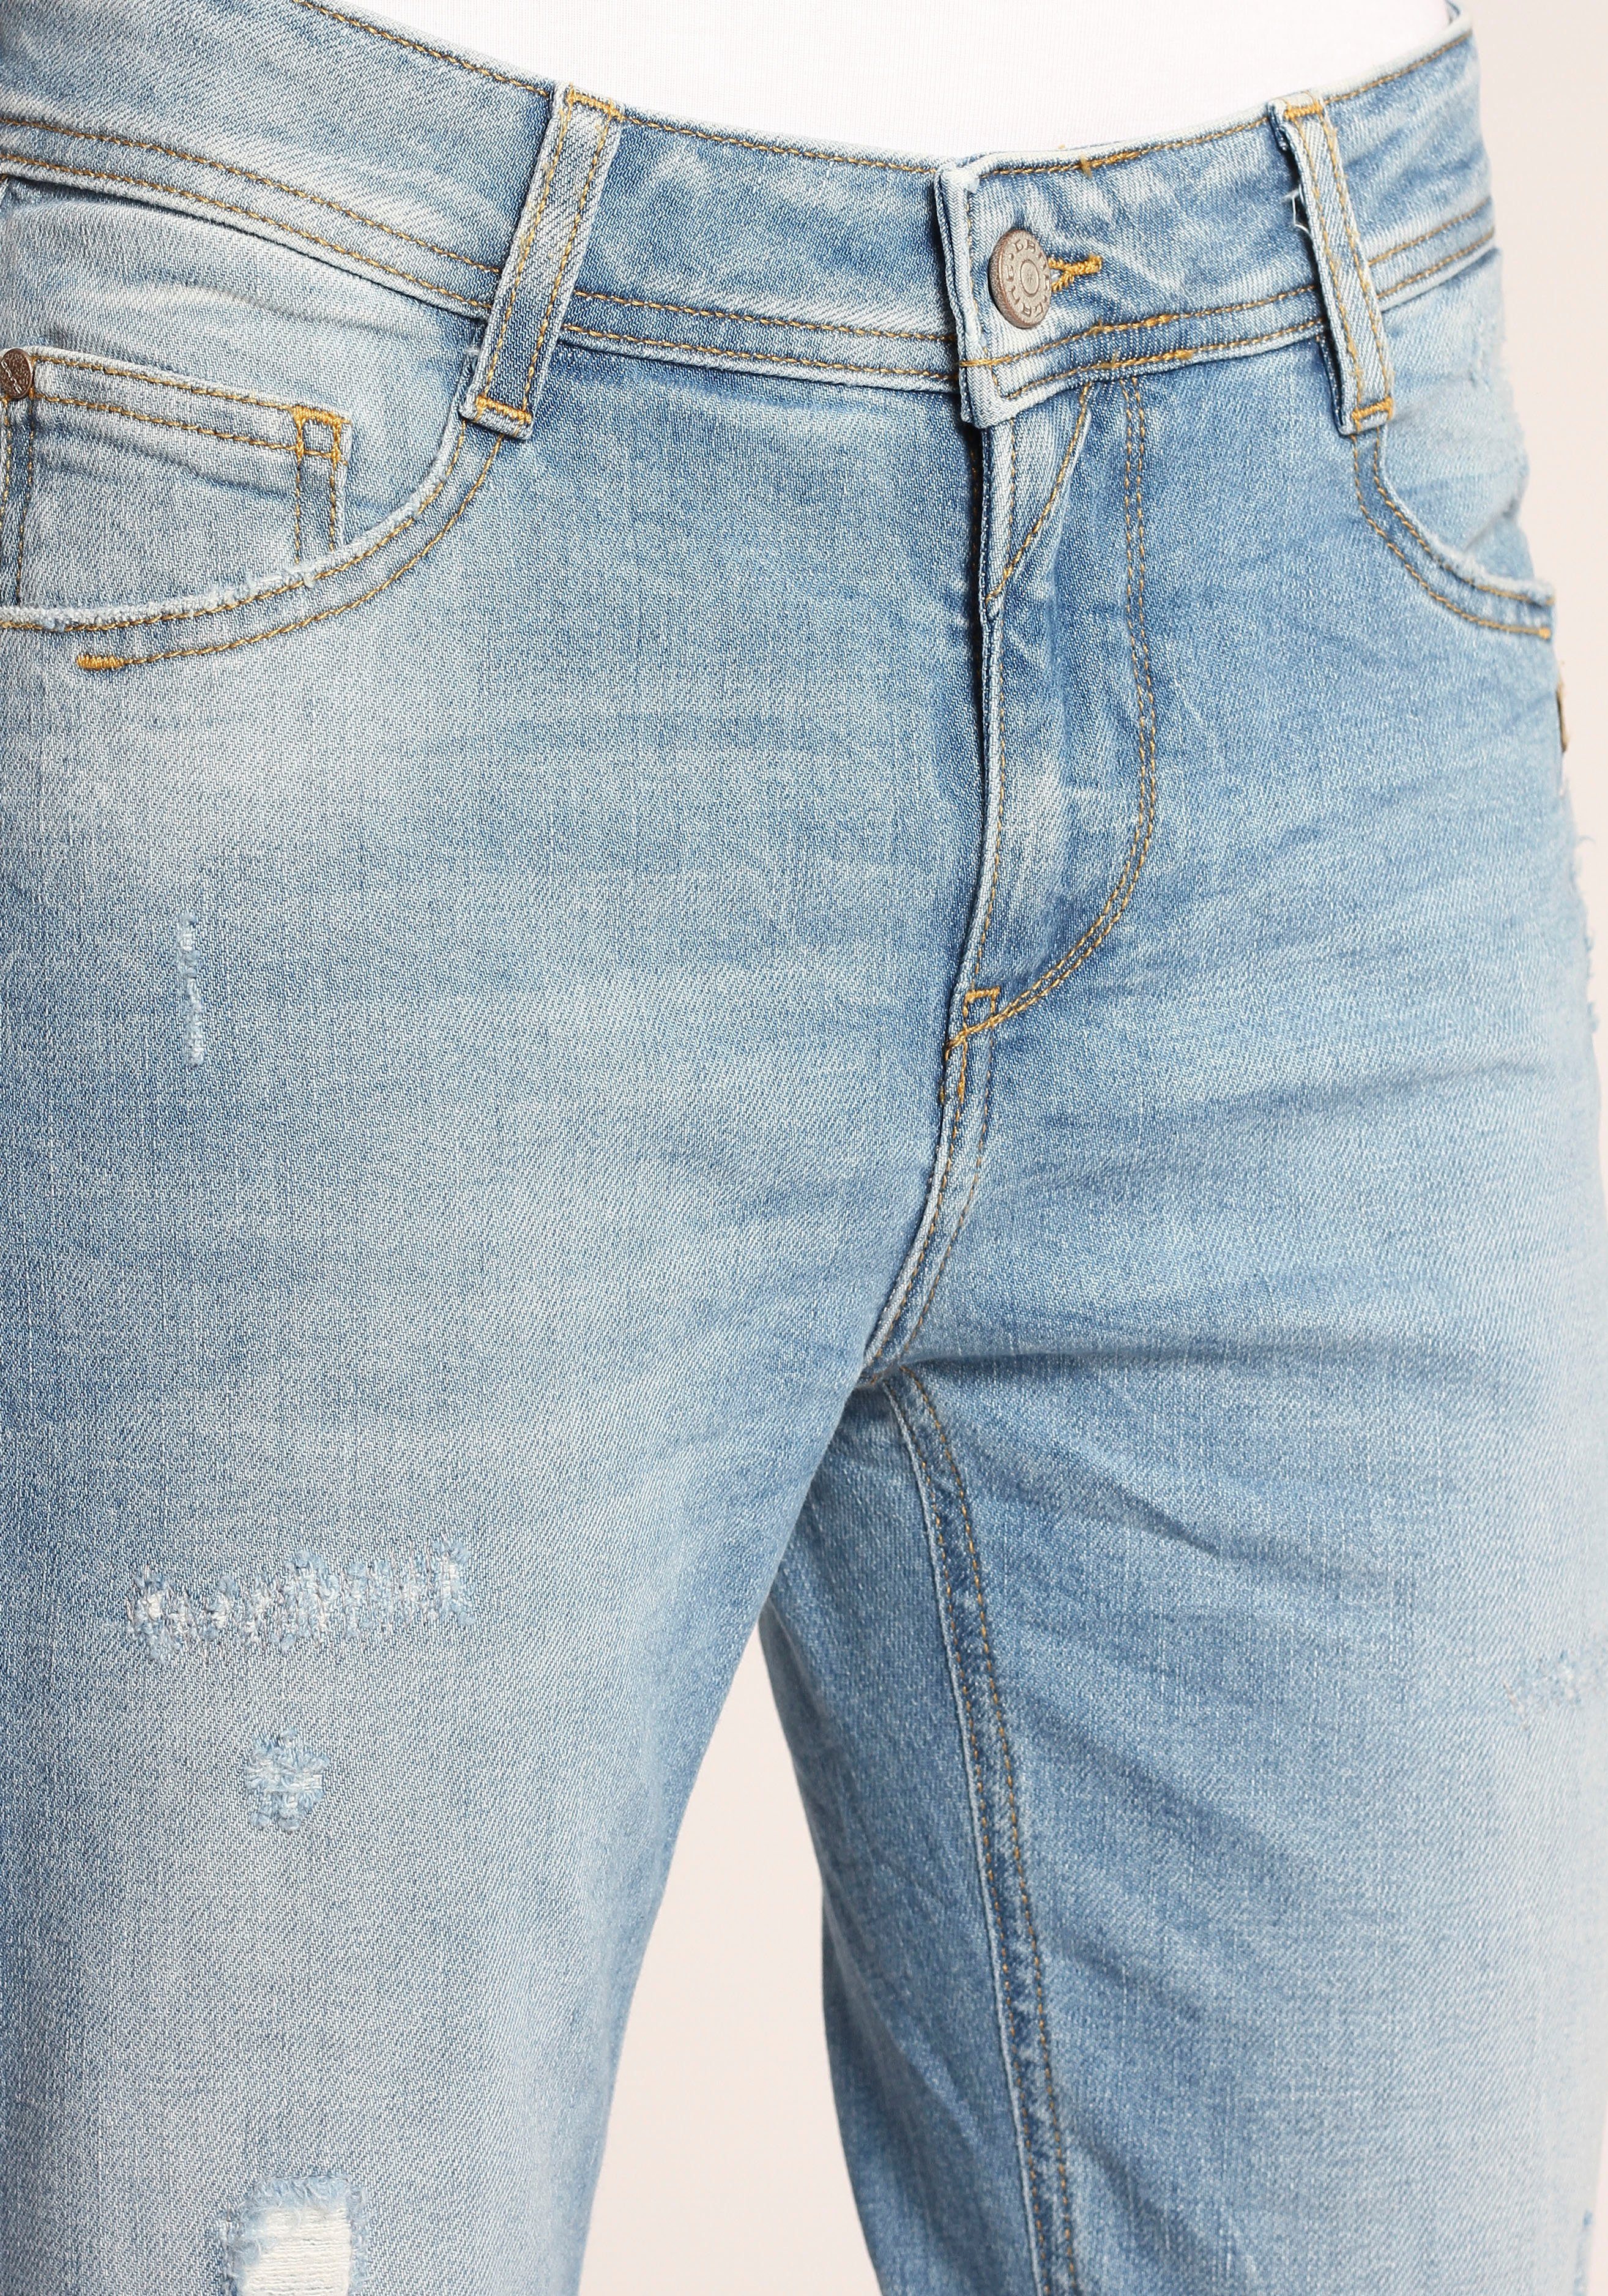 verkürzter 94AMELIE mit Relax-fit-Jeans Saumabschluss ausgefranster GANG Beinlänge und CROPPED am Kante